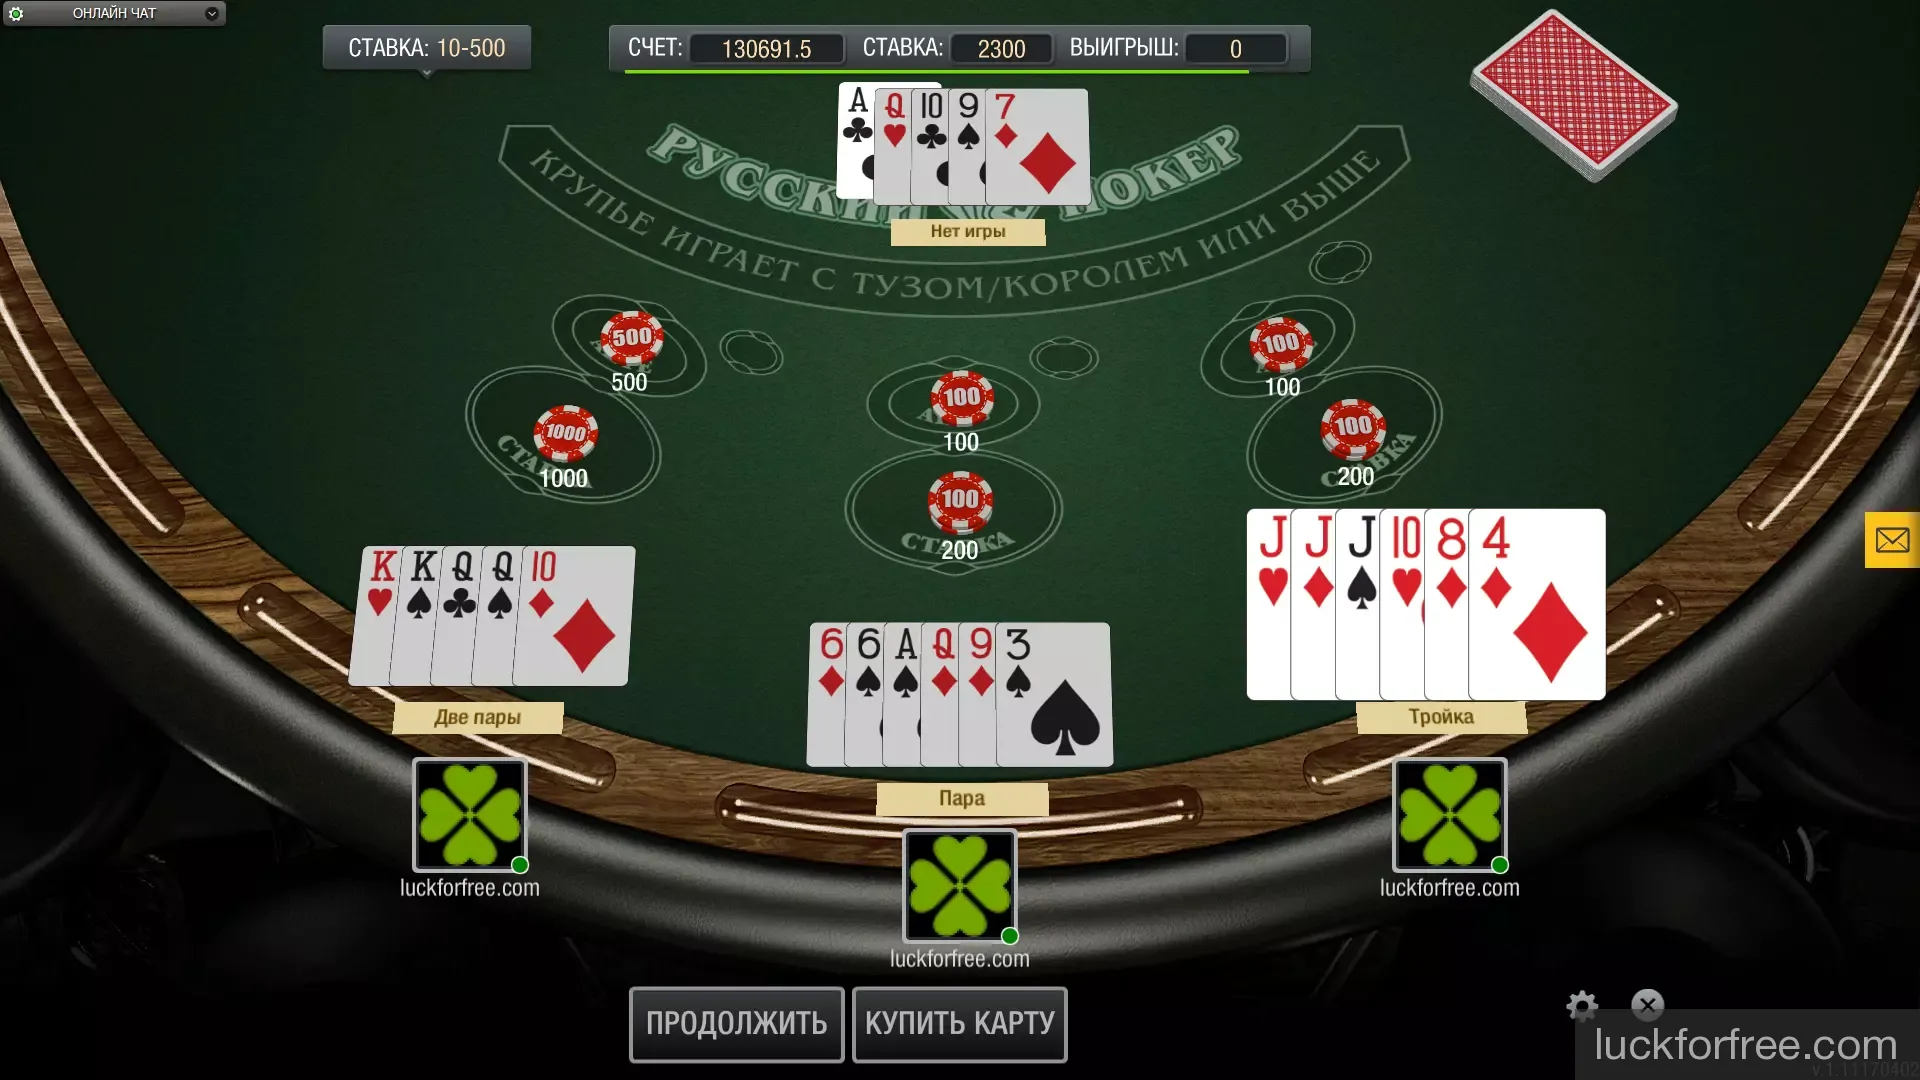 Покер техасский покер играть с компьютером бесплатно и без регистрации игровые автоматы играть бесплатно шары